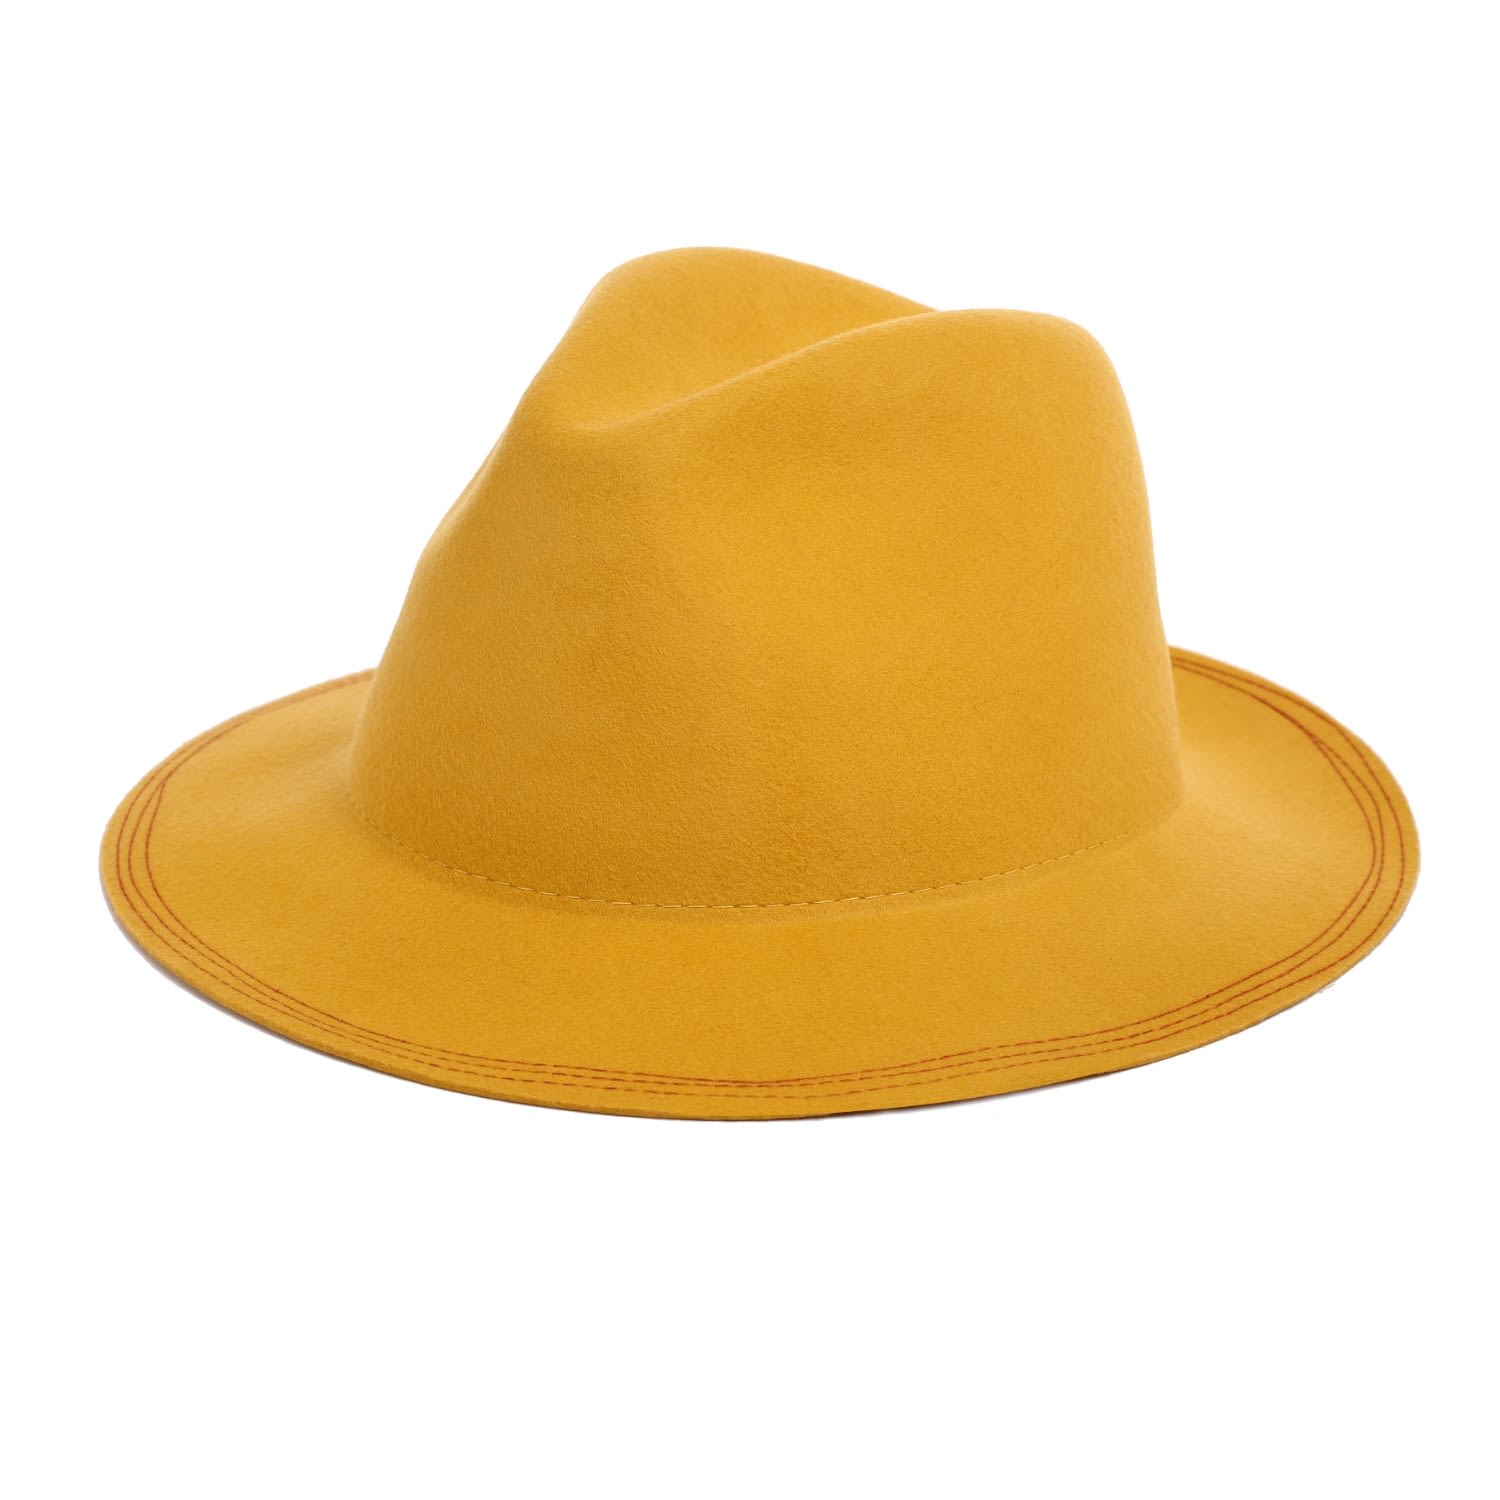 Justine Hats Women's Yellow / Orange Floppy Mustard Yellow Fedora